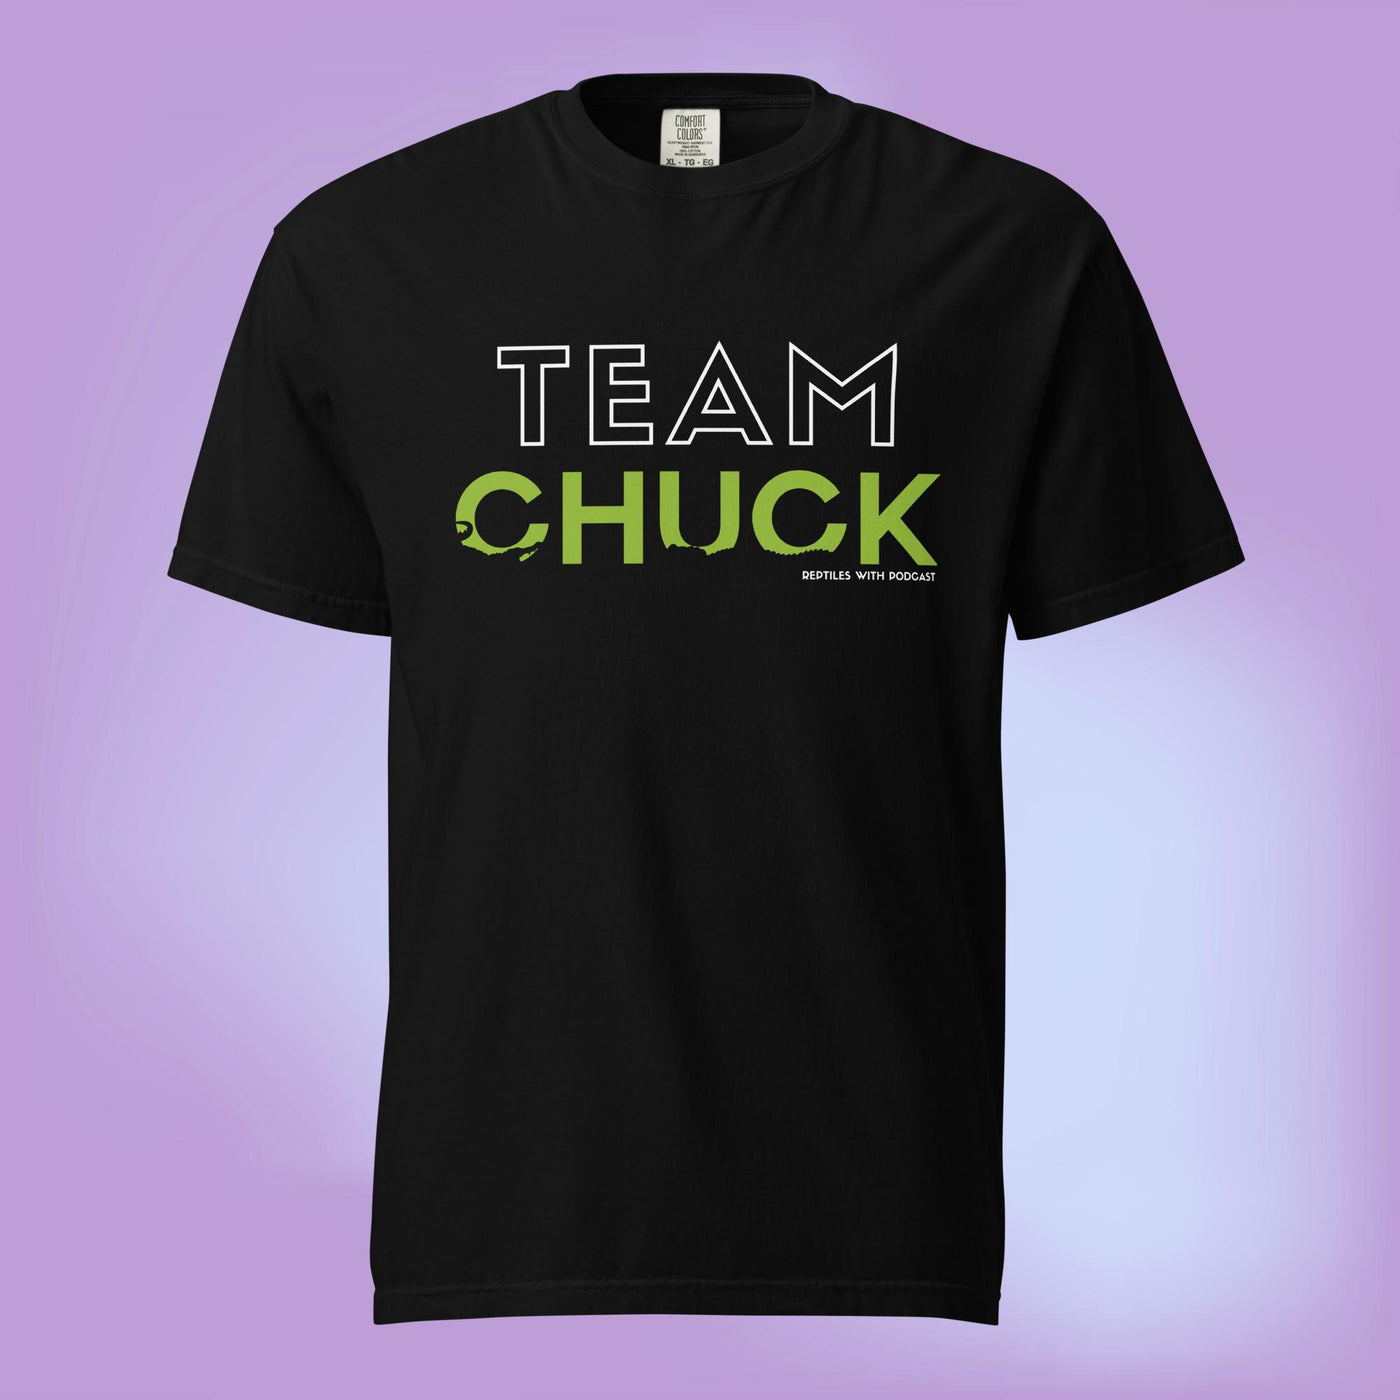 Team Chuck t-shirt